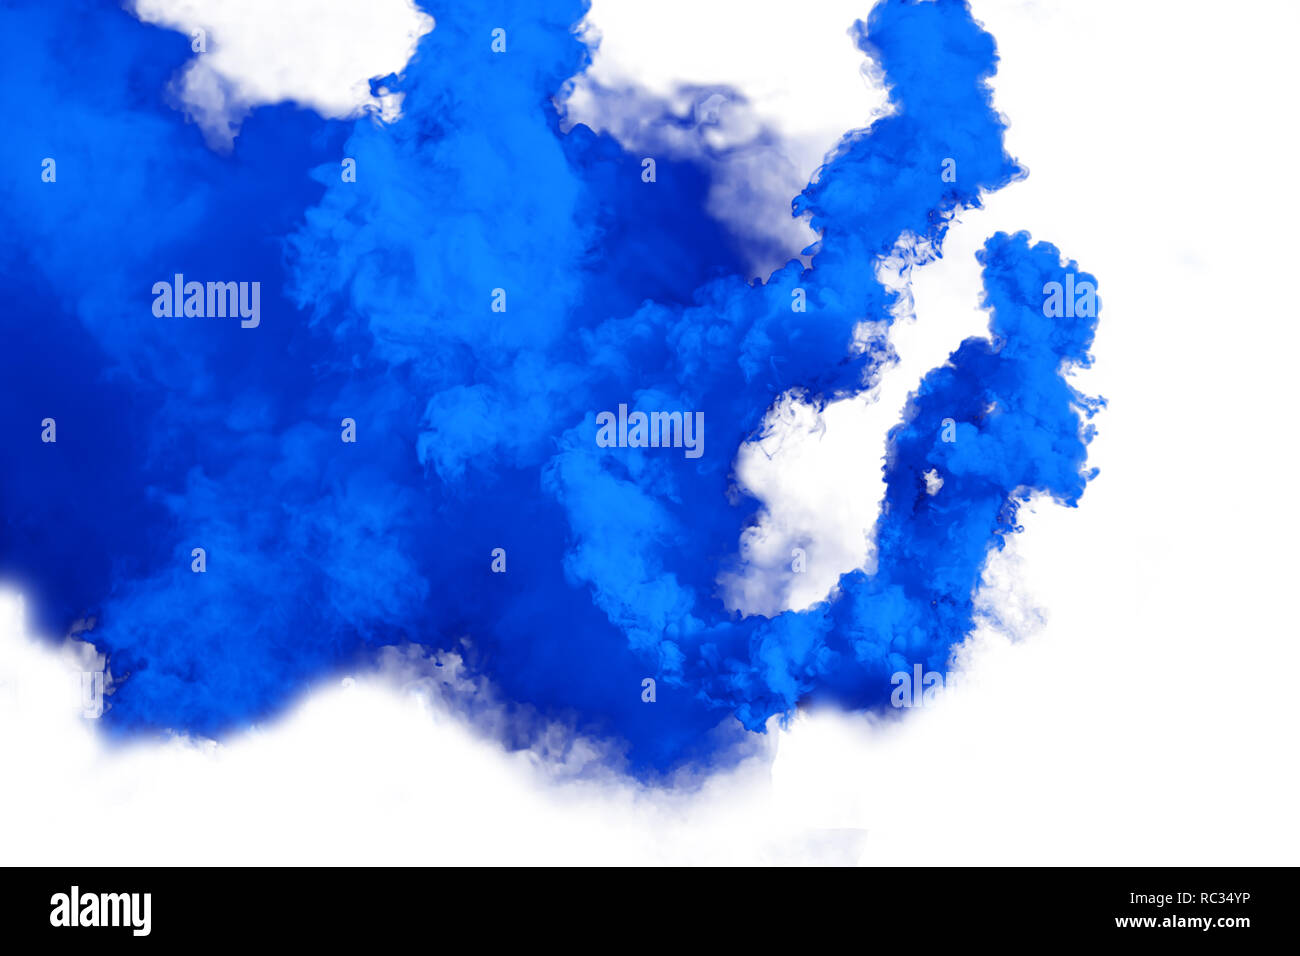 Blauer Rauch Bombe auf weißem Hintergrund Stockfotografie - Alamy